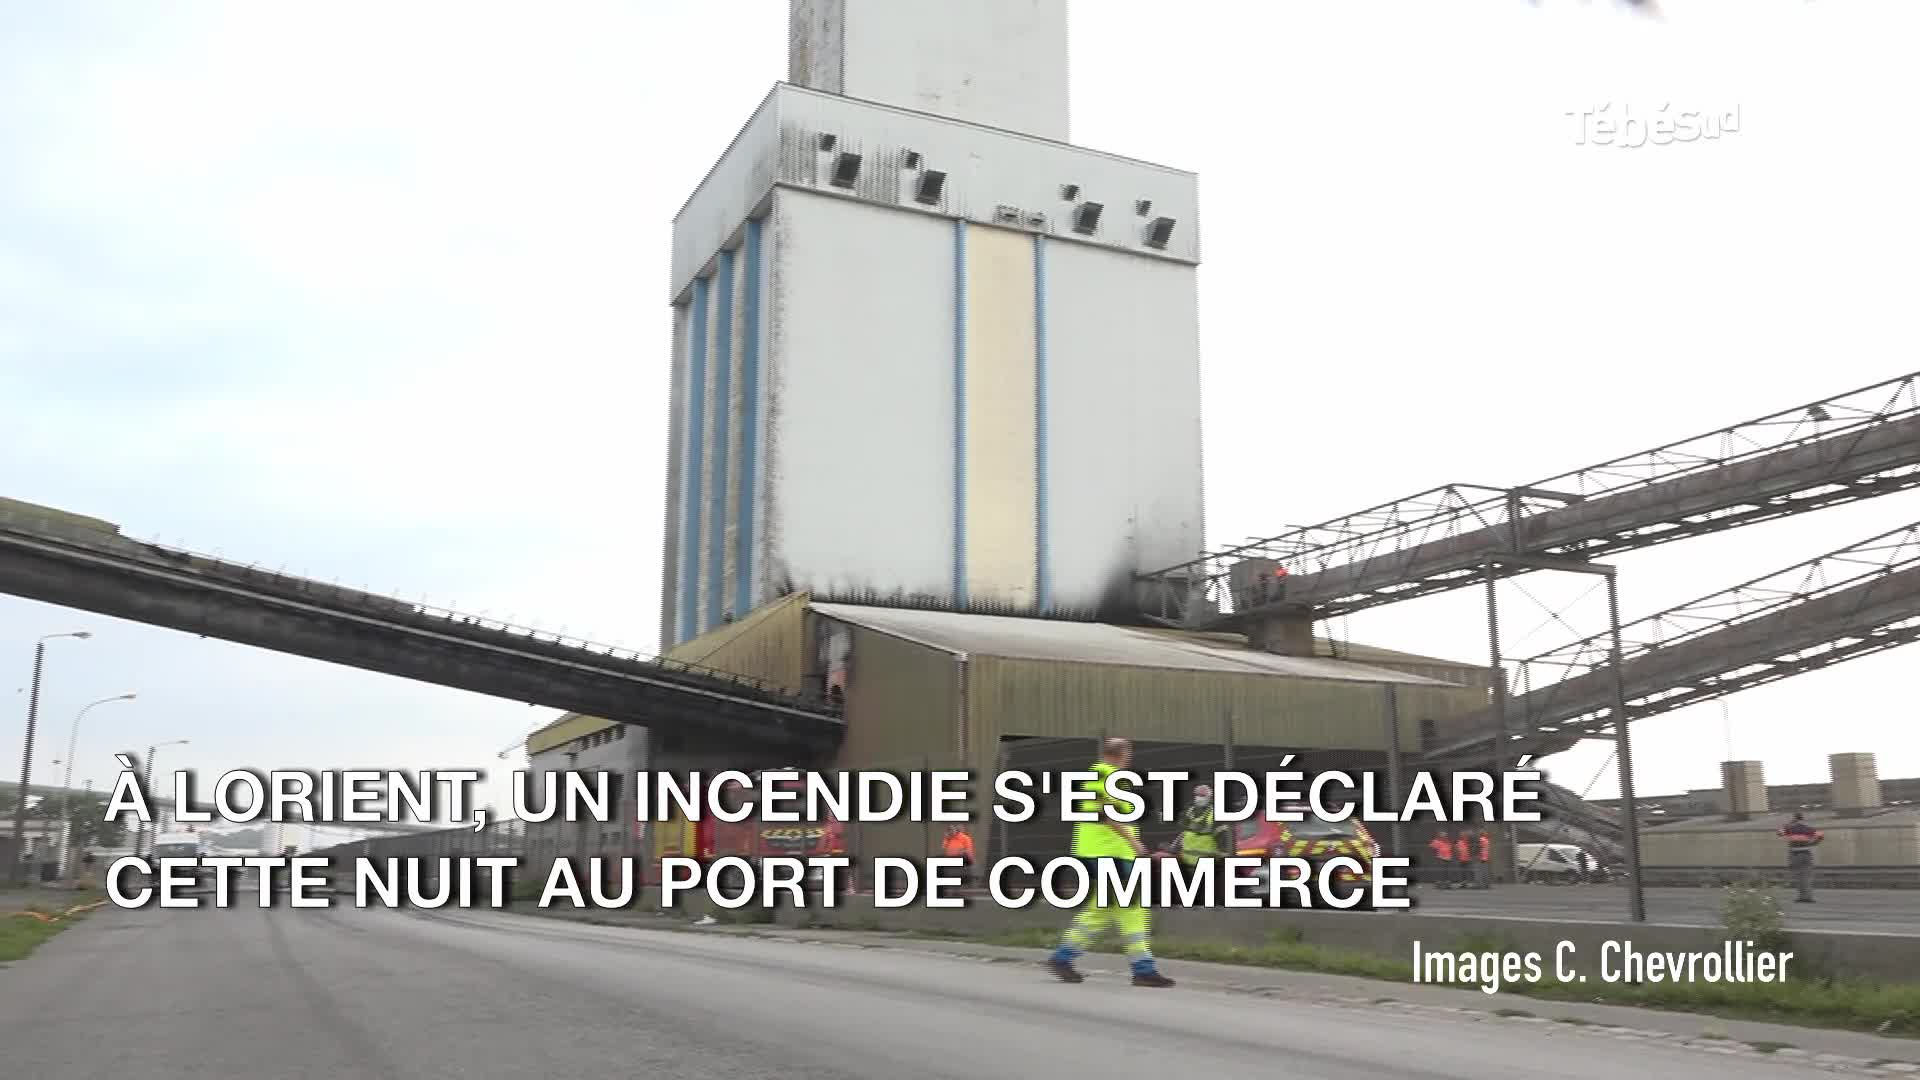 Incendie au port de commerce de Lorient : 45 pompiers mobilisés (Le Télégramme)